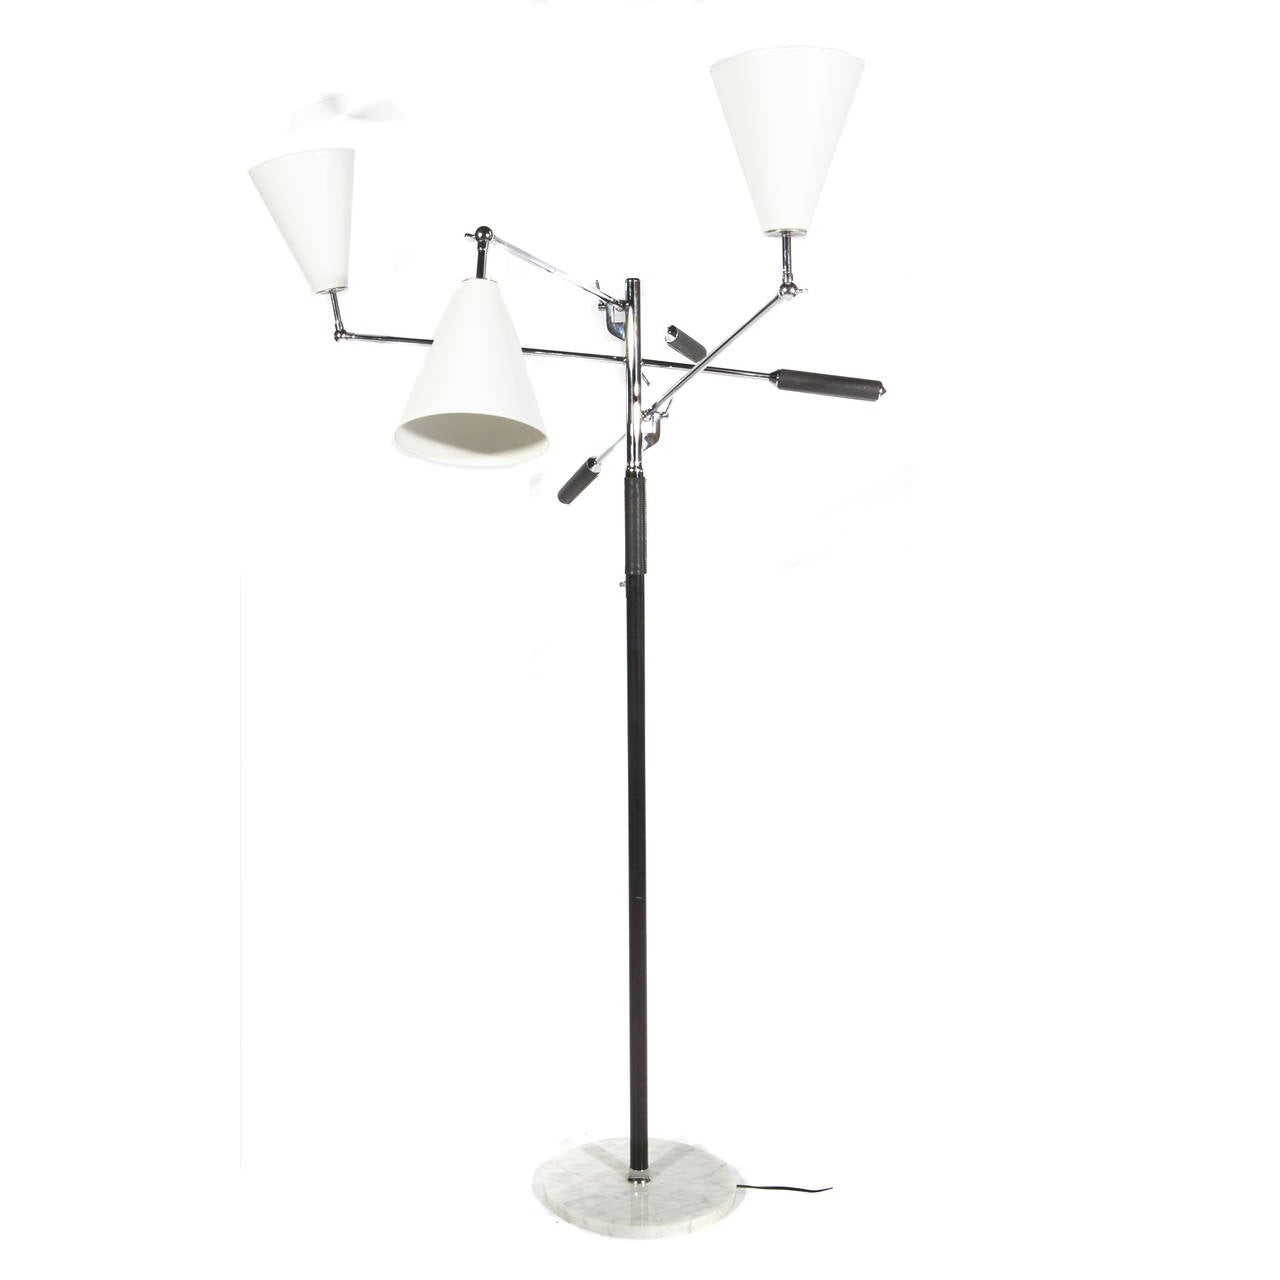 Mid-20th Century 1960s Italian Triennale Style Floor Lamp